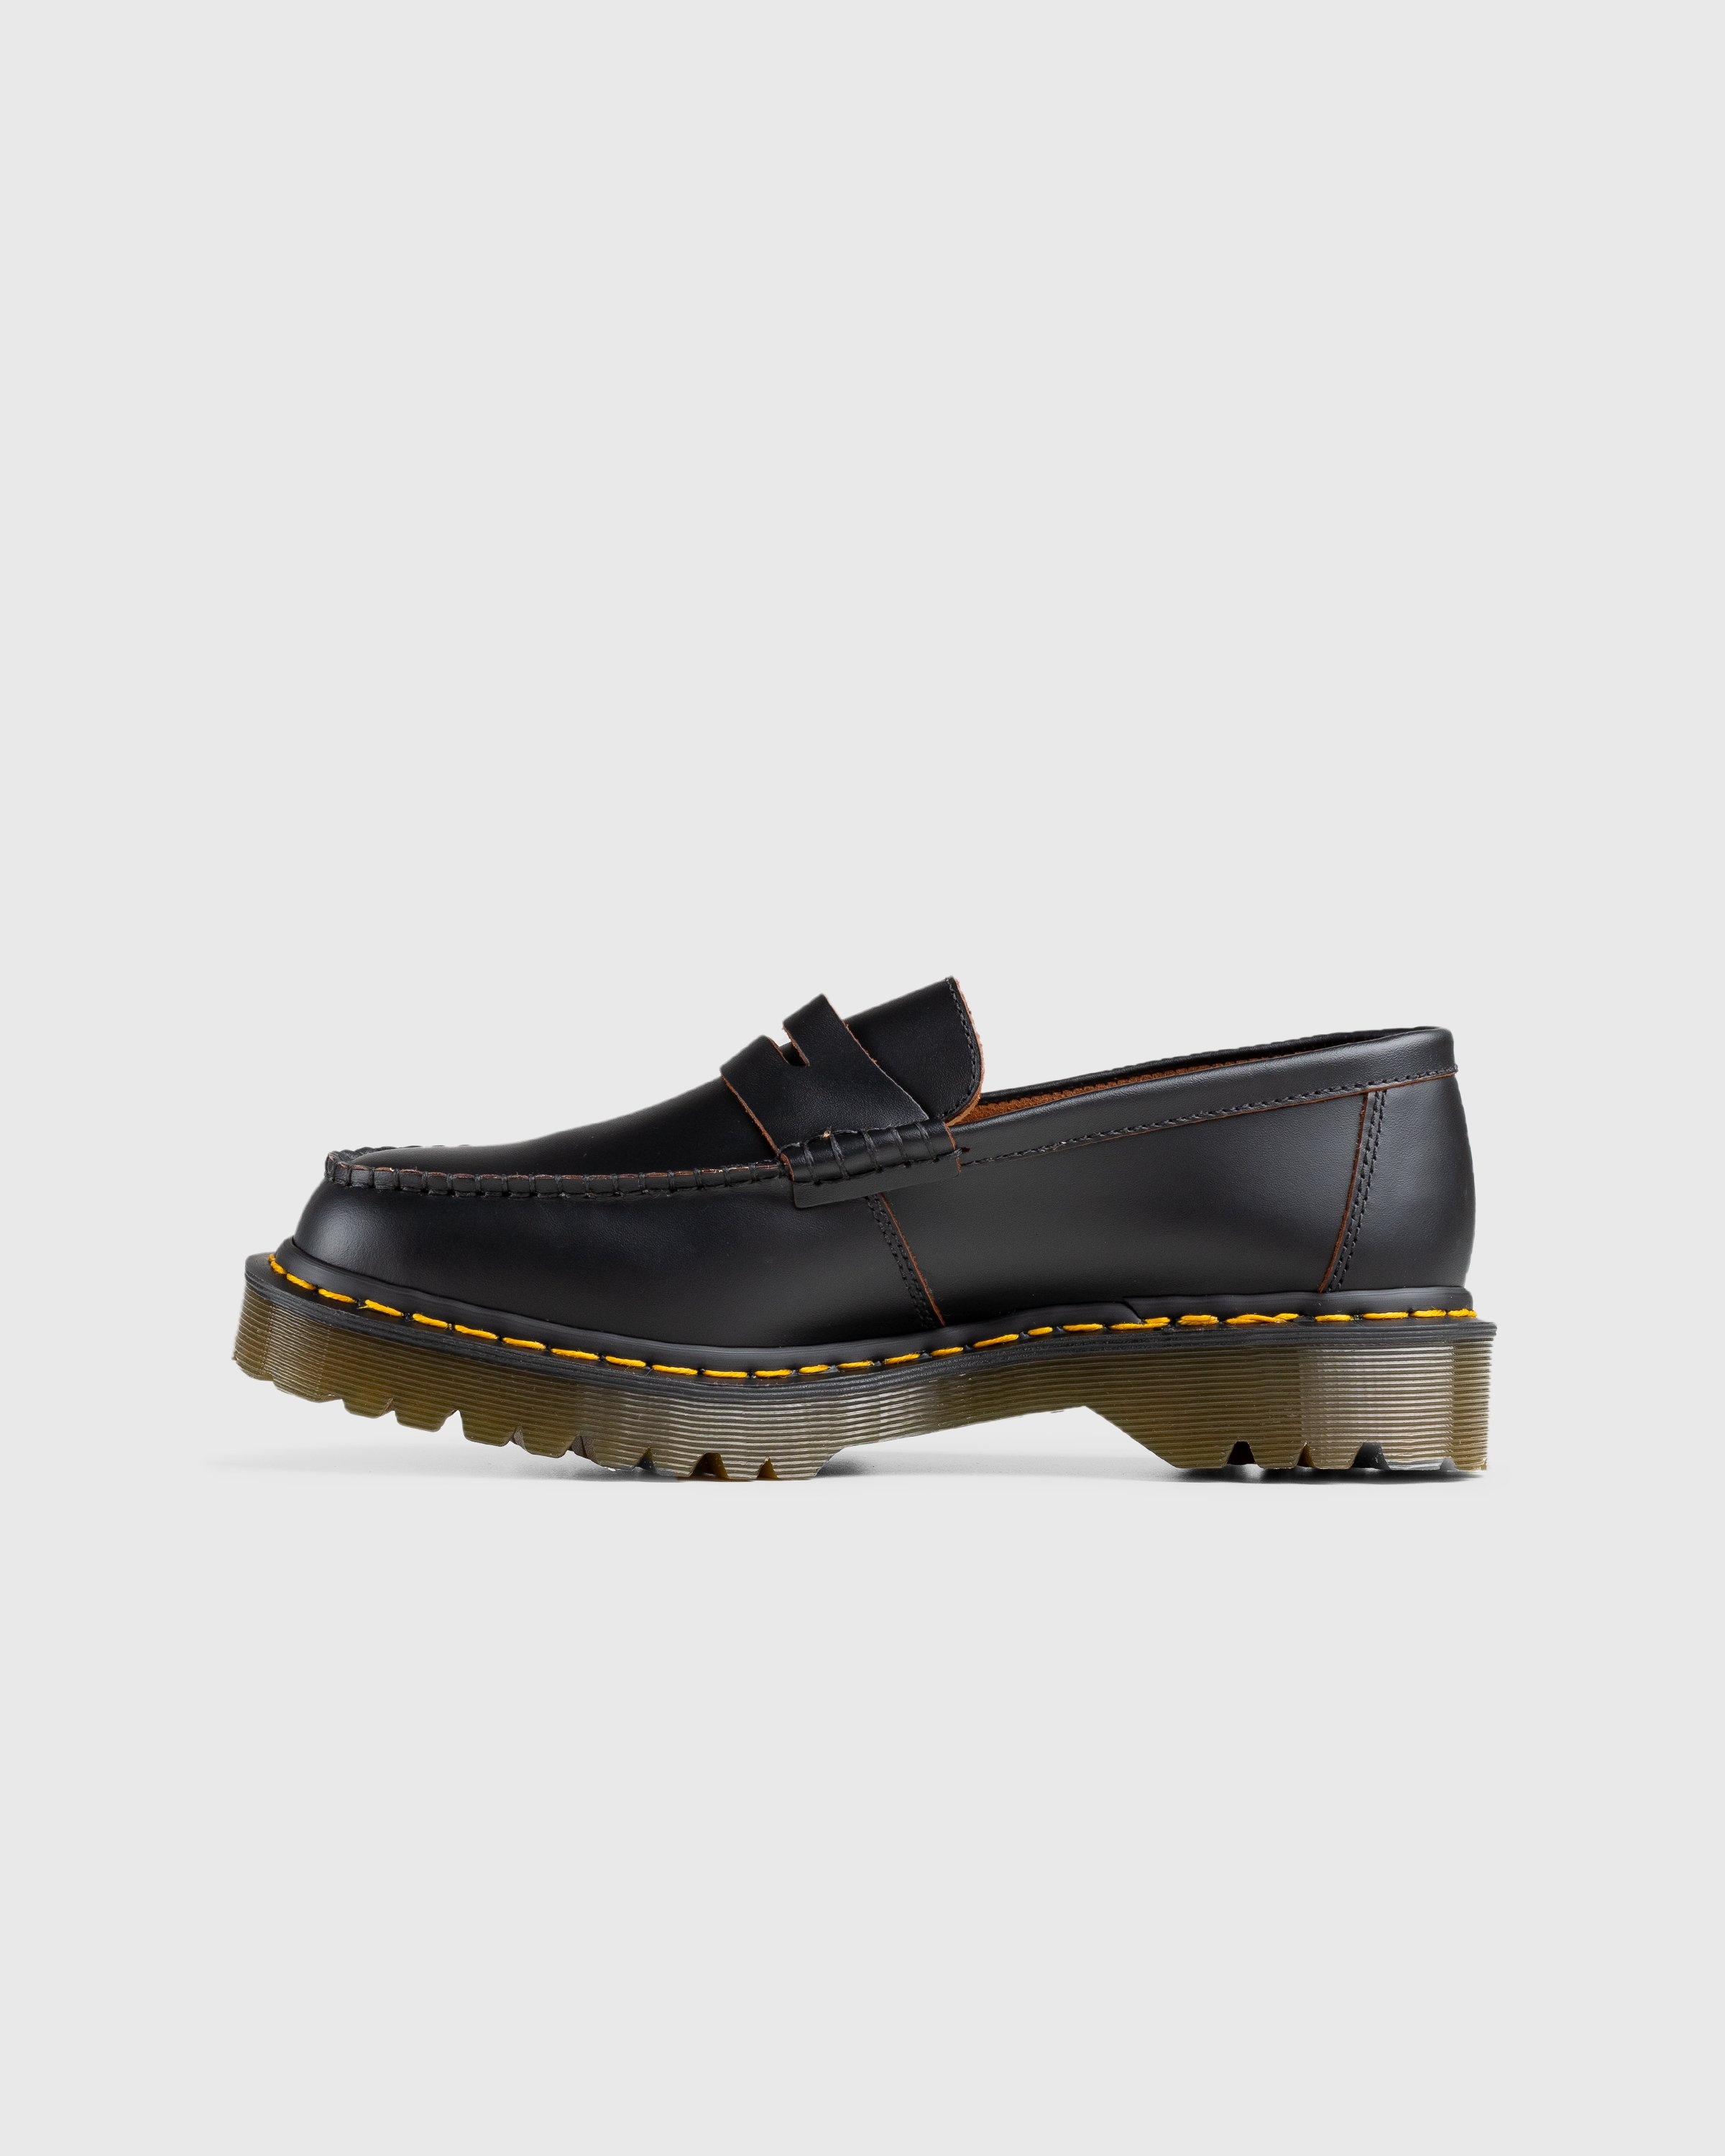 Dr. Martens – Penton Bex Quilon Leather Loafers Black - Shoes - Black - Image 2